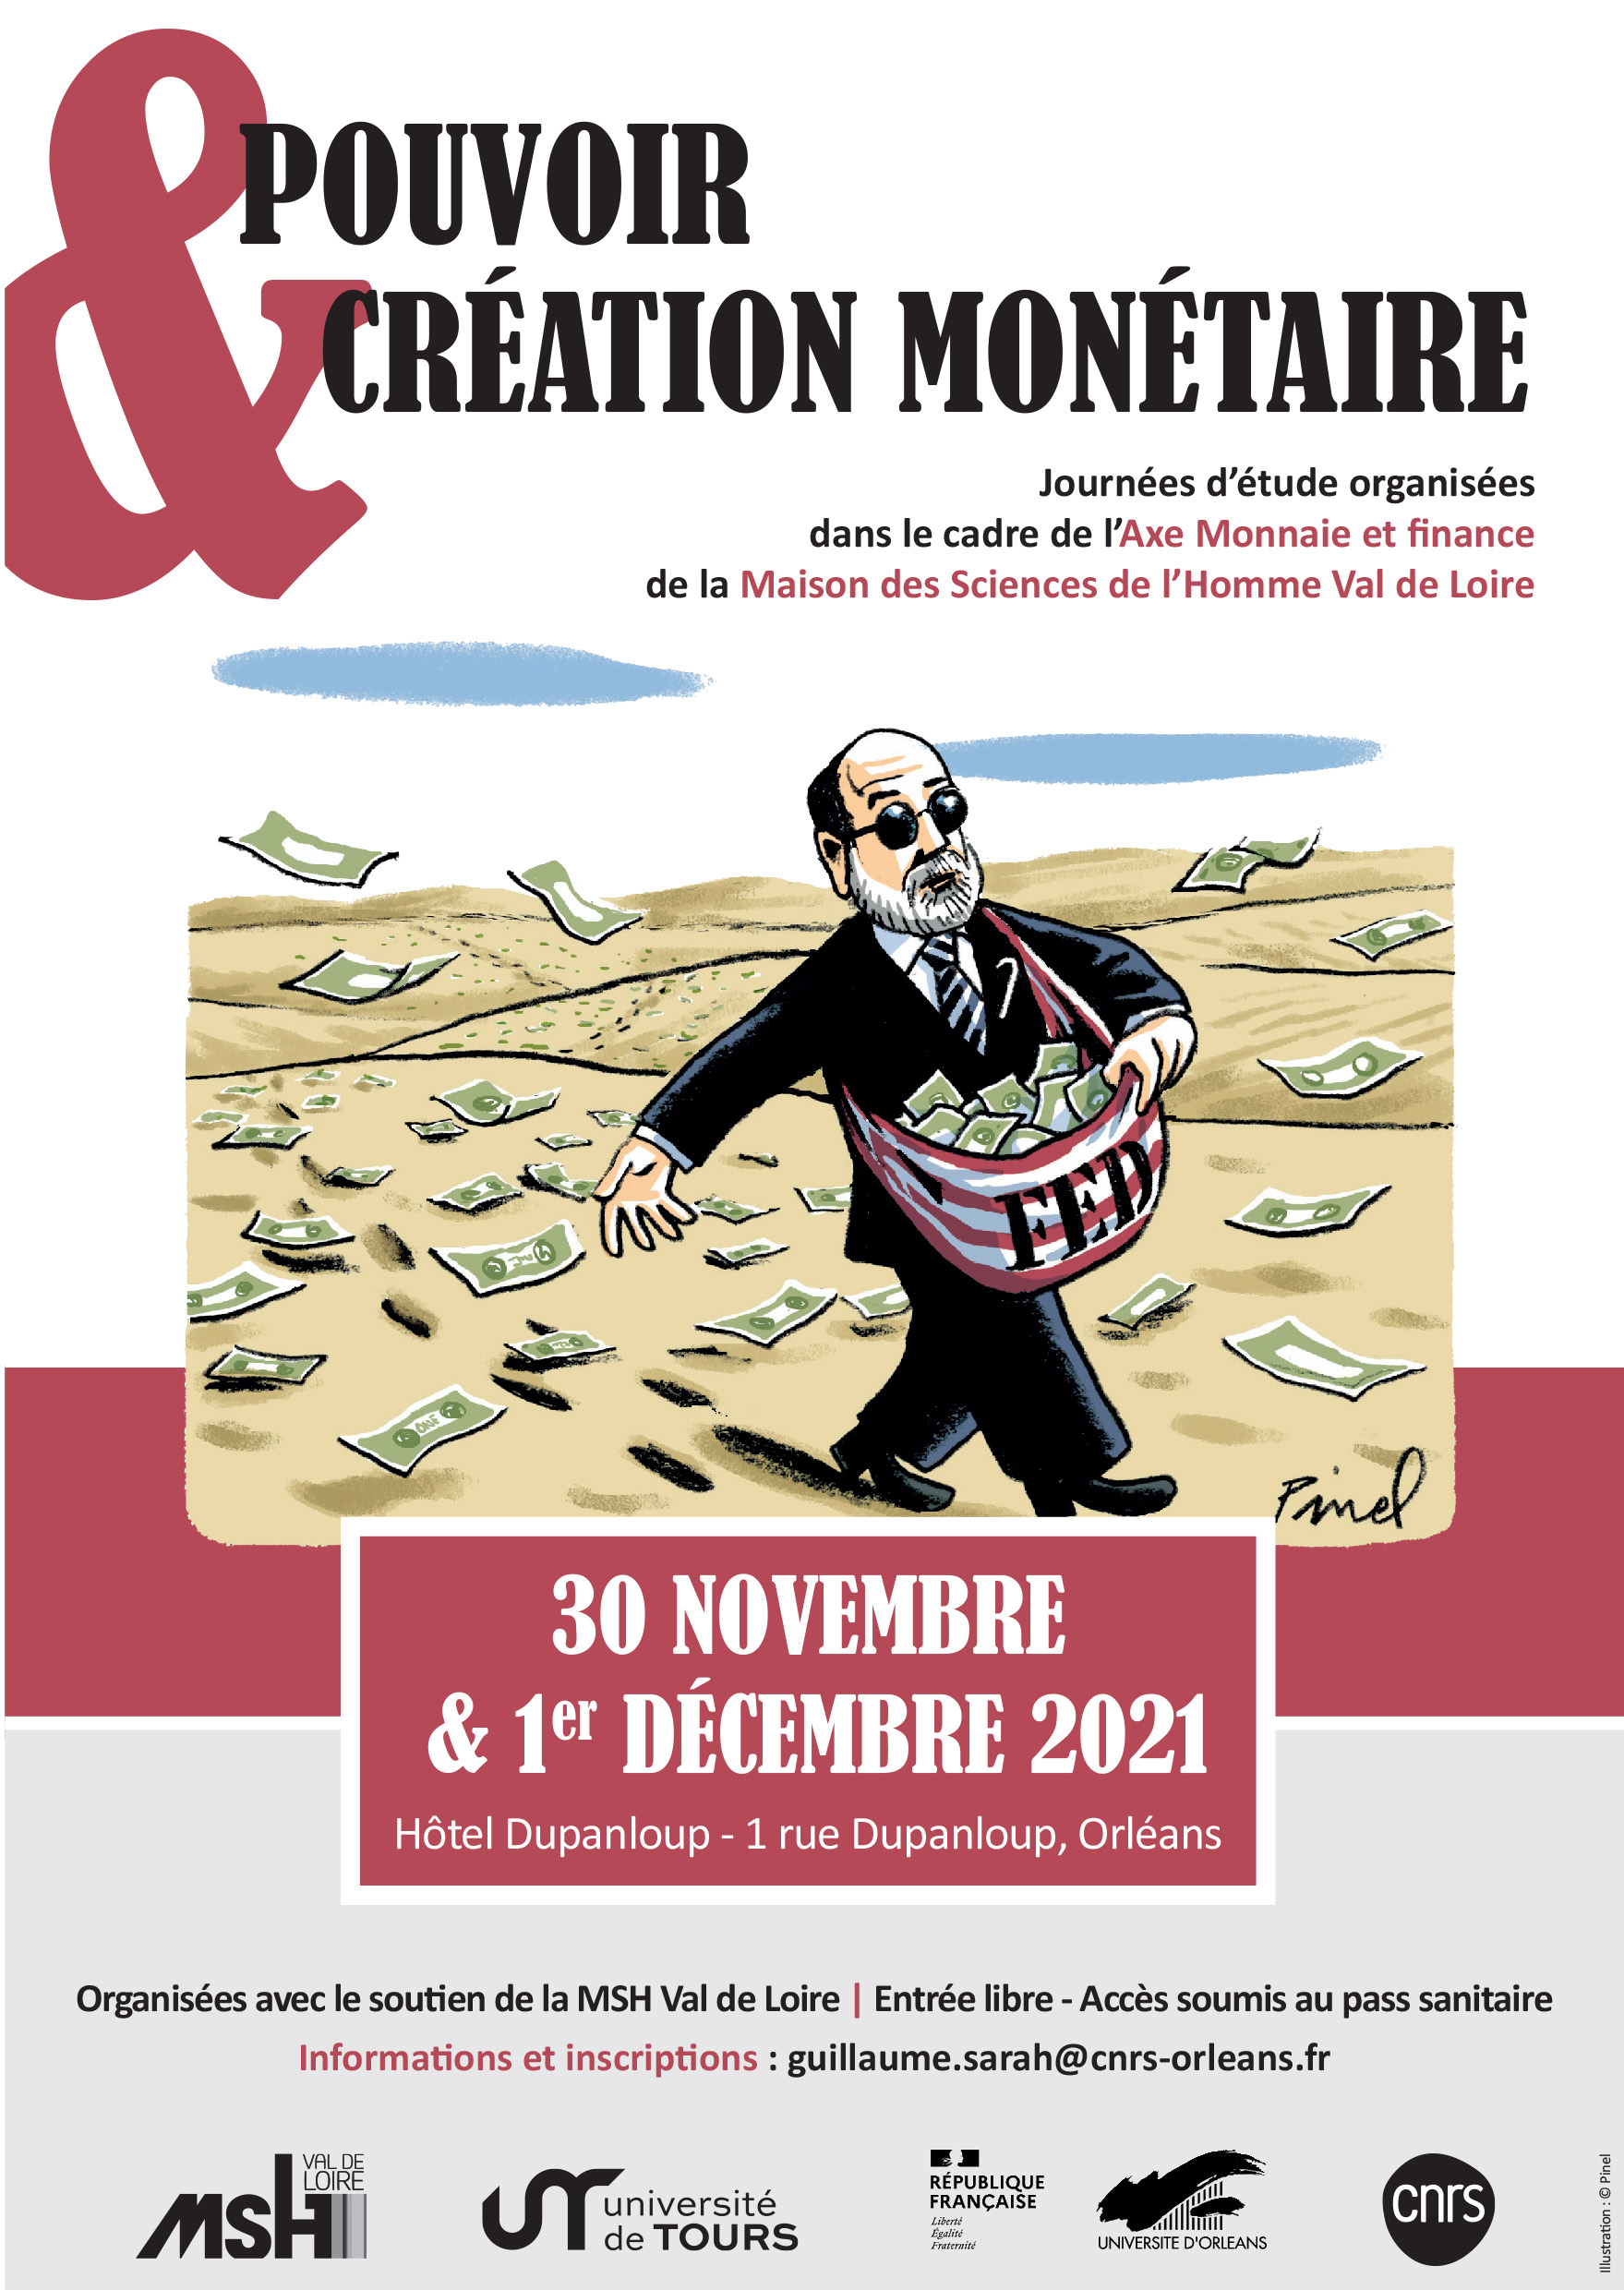 Pierre Allorant - La crise monétaire française de l’entre-deux-
guerres vue par la caricature